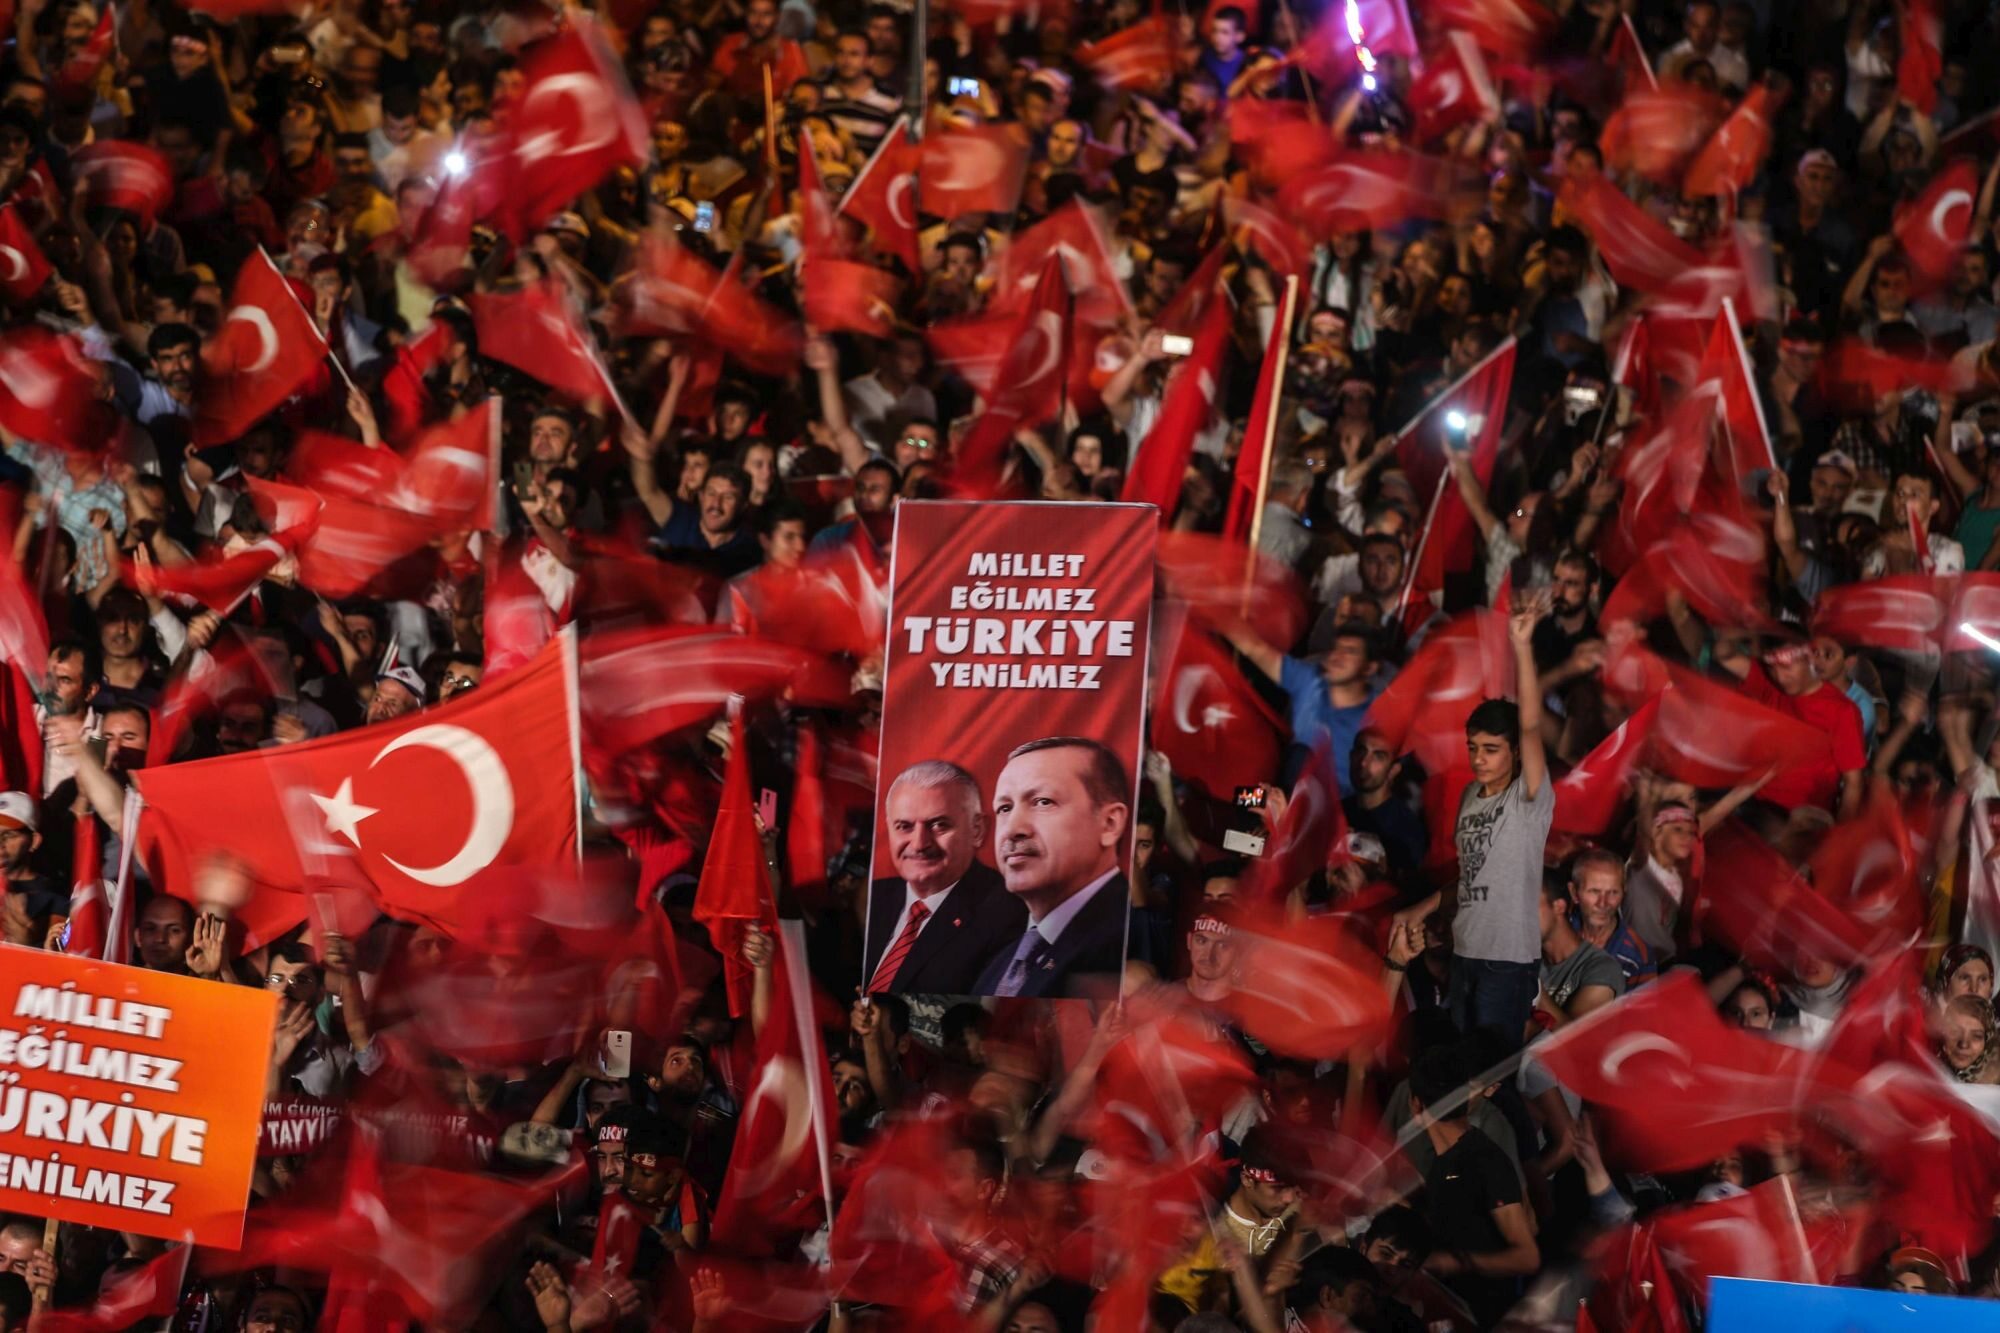 Wiec zwolenników prezydenta Erdogana